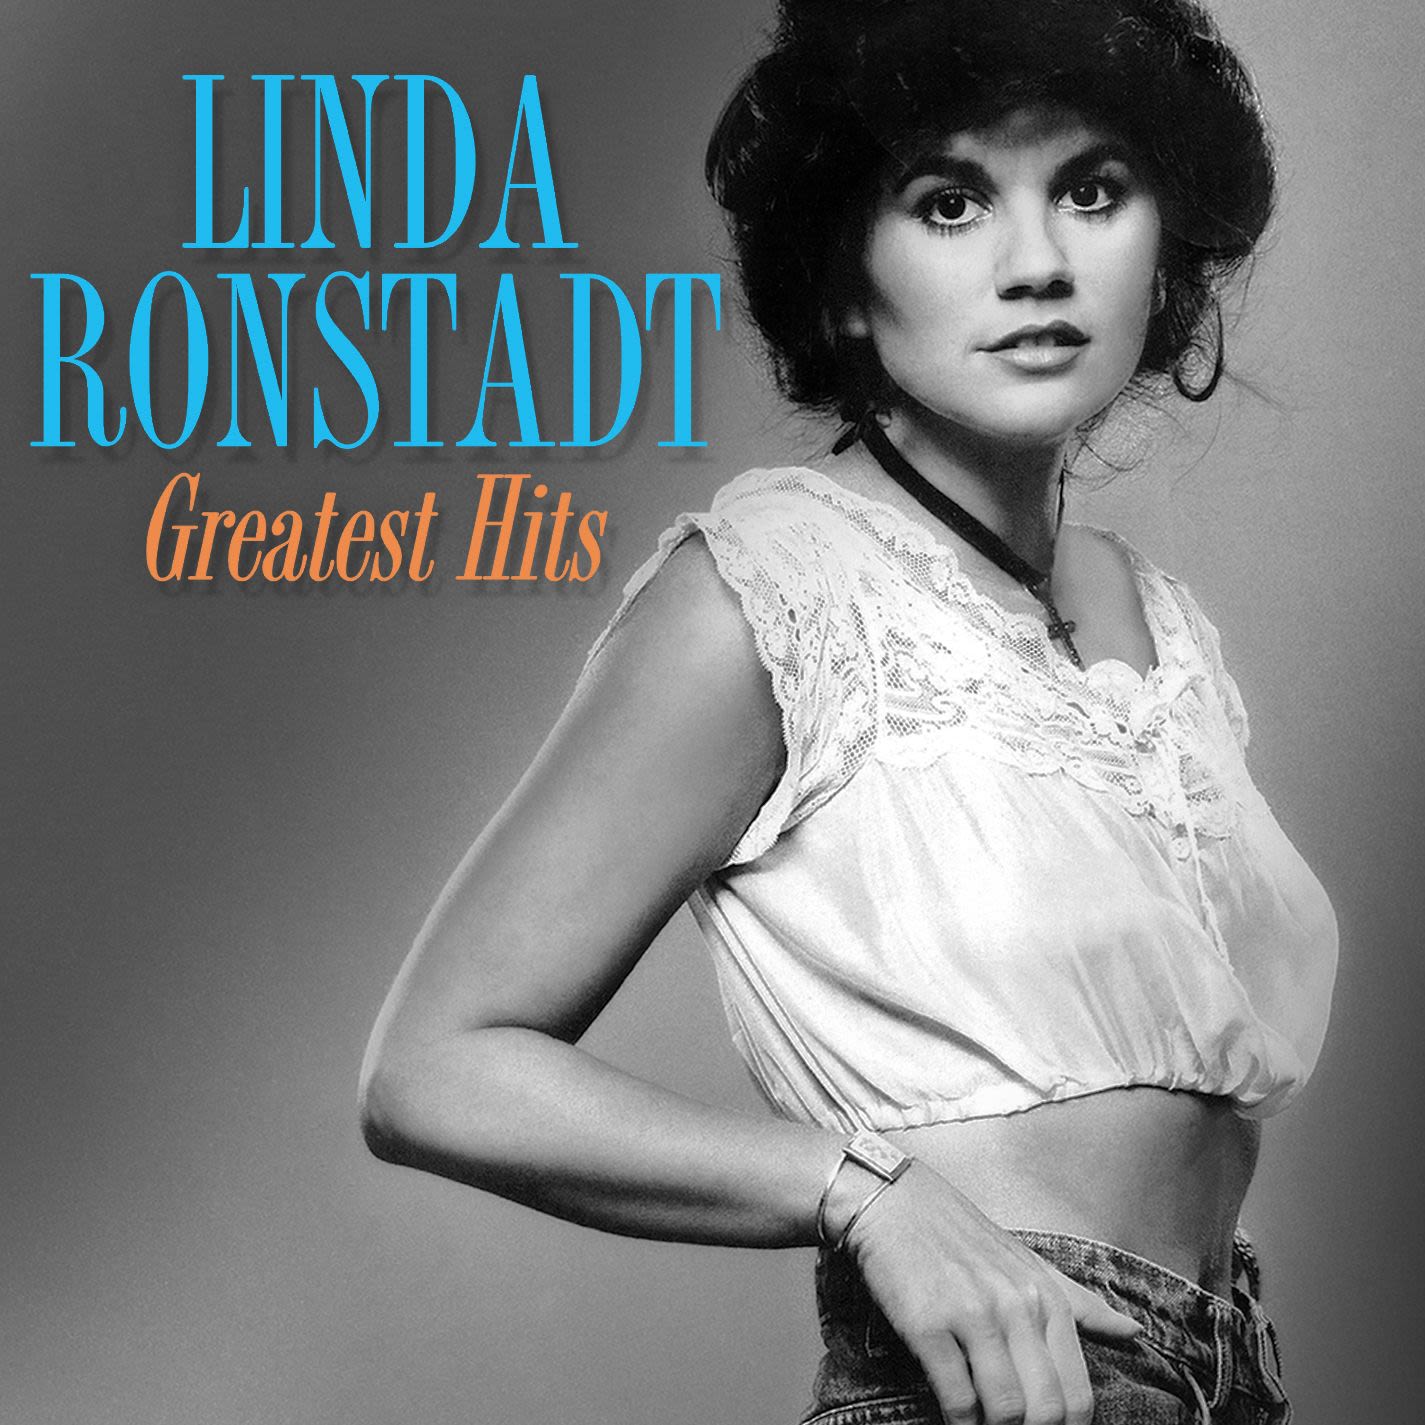 Linda Ronstadt - Hurt so Bad | iHeart